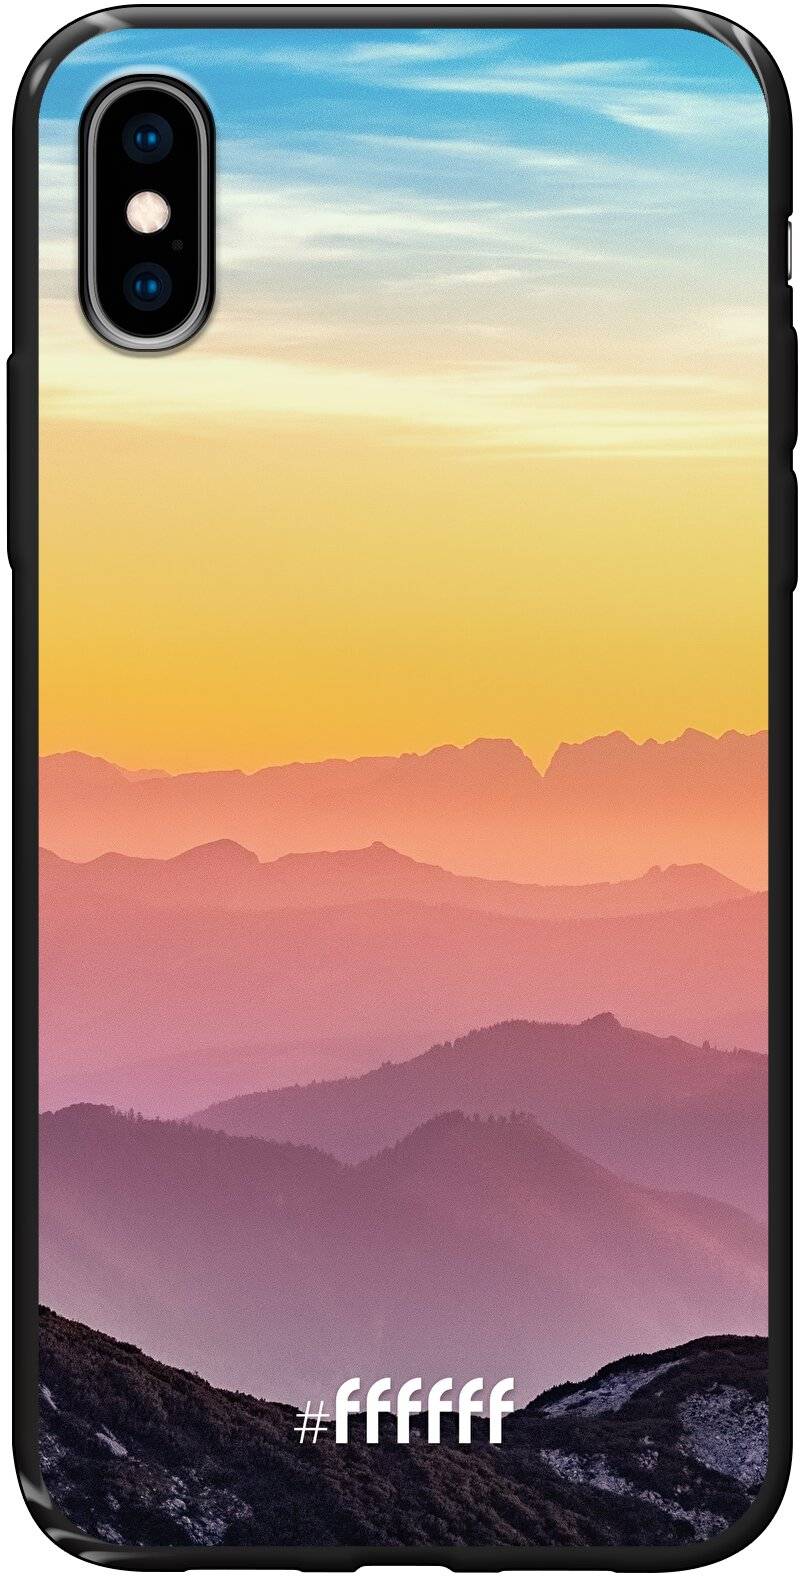 Golden Hour iPhone Xs